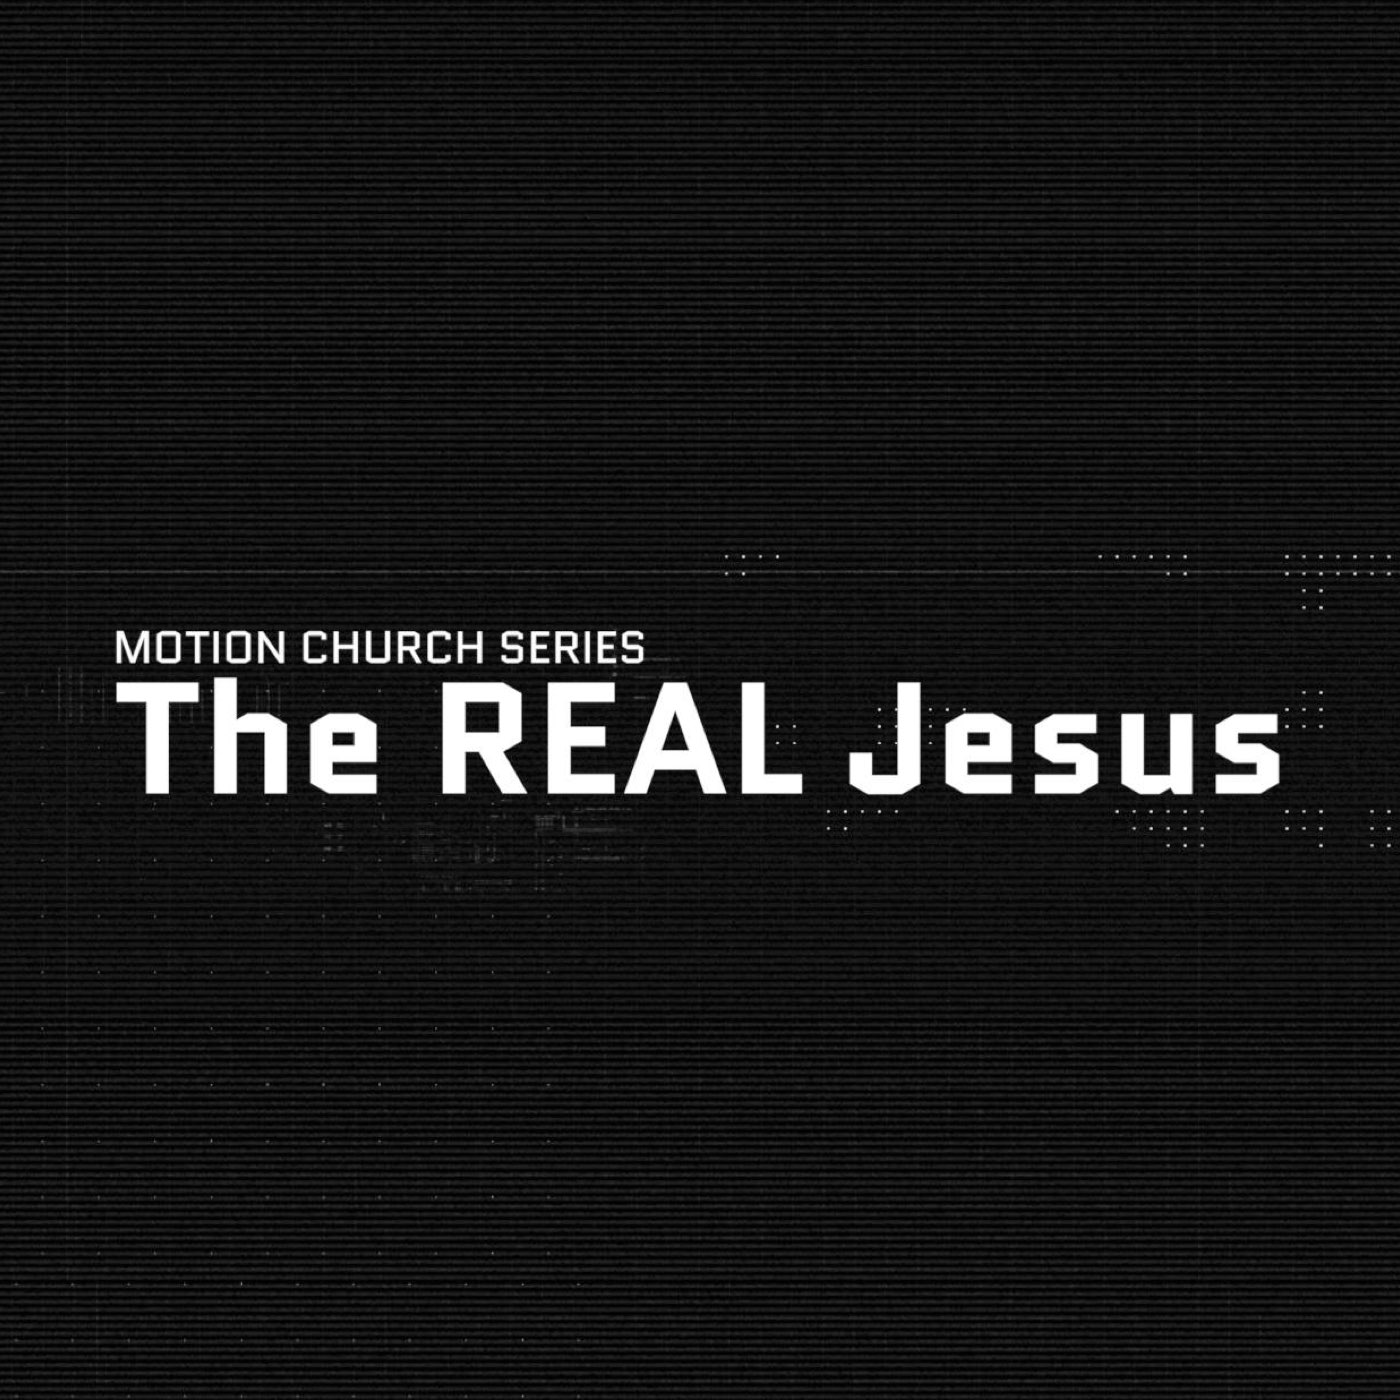 The REAL Jesus Series Week 1 - Relational Jesus